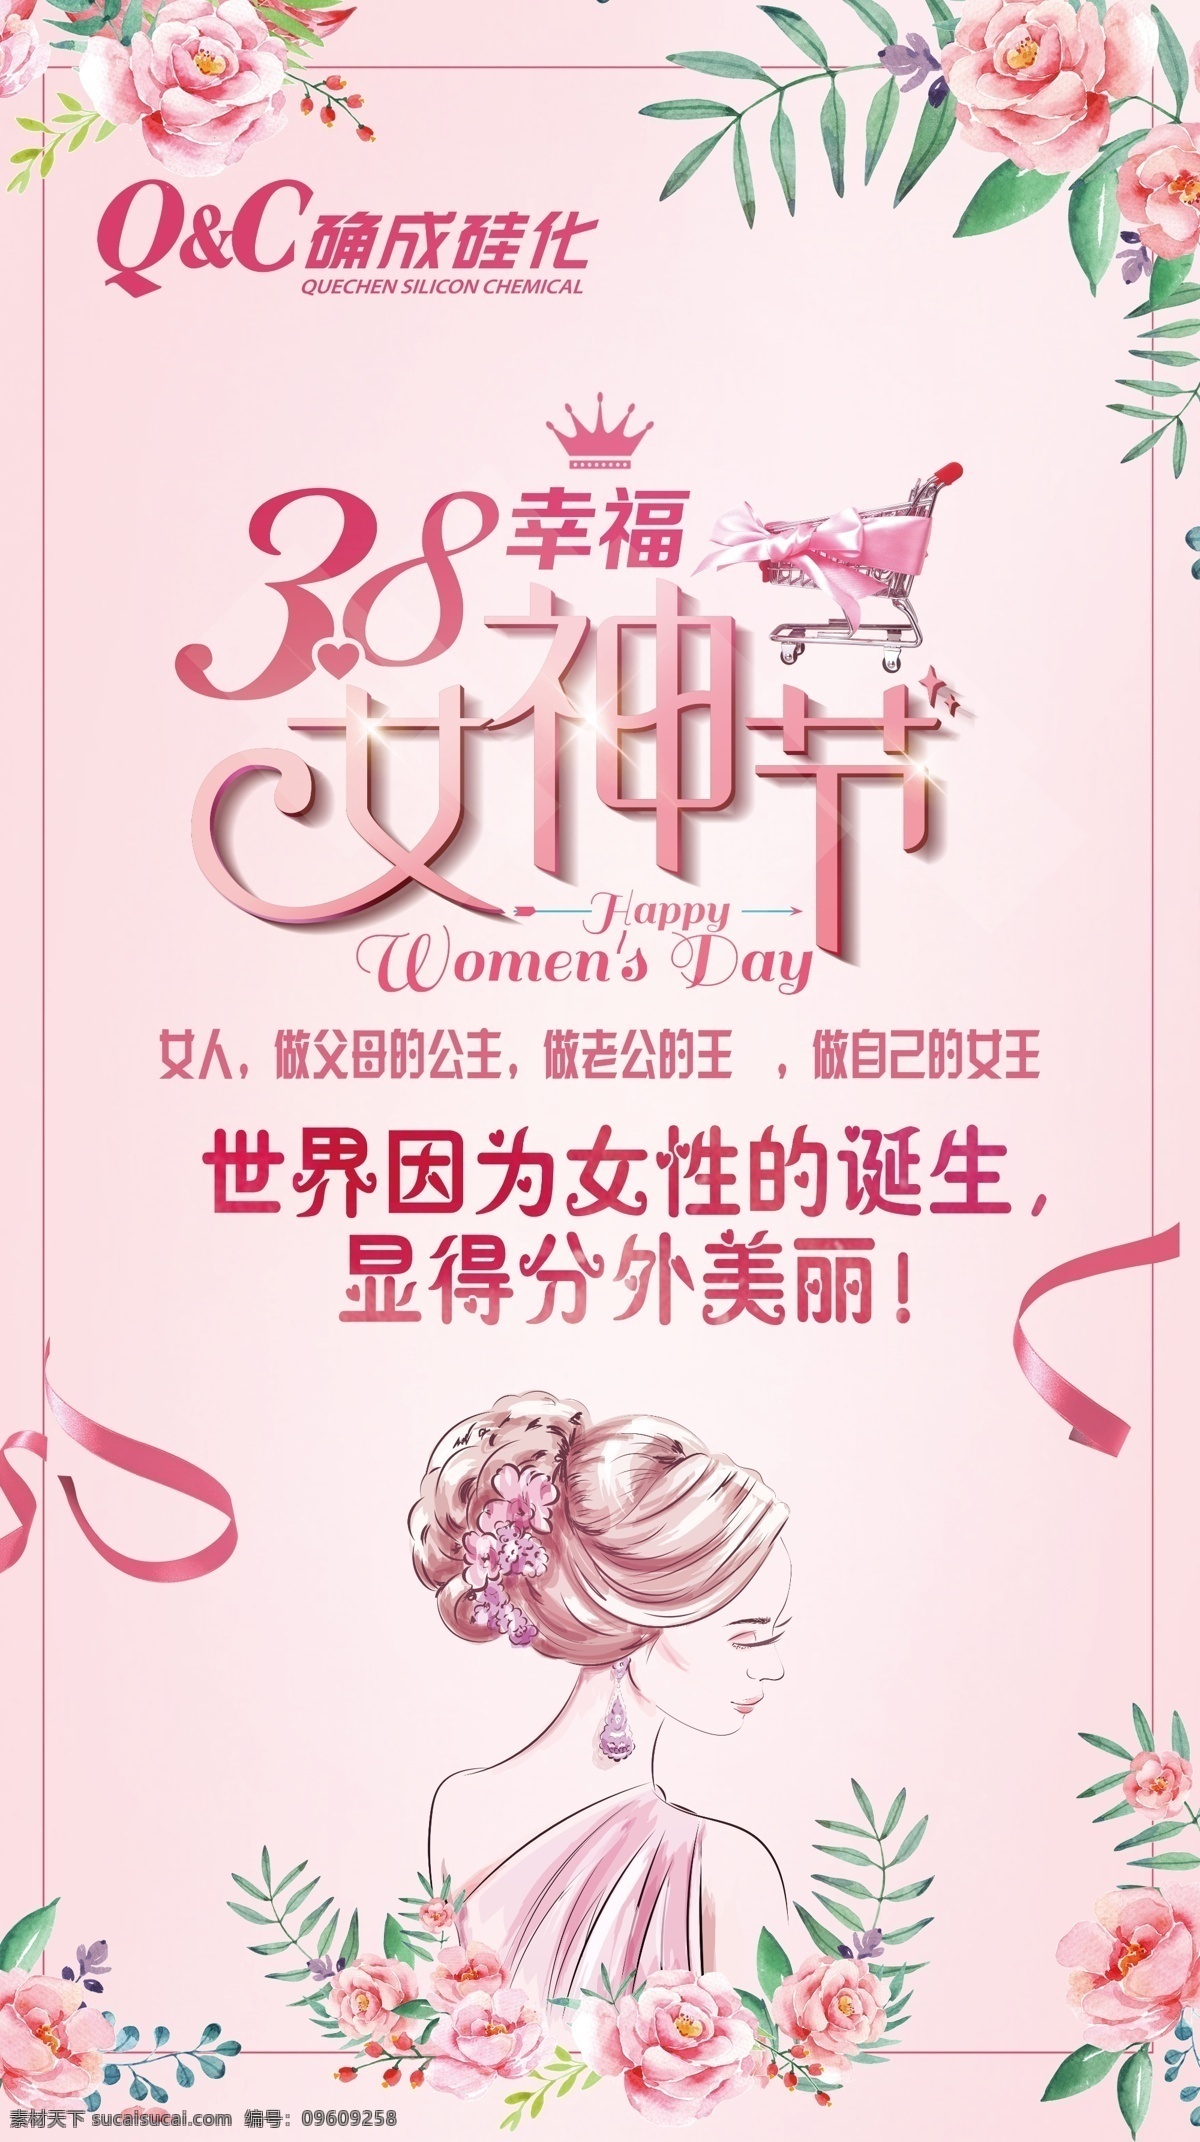 38 女神 节 海报 确成硅化 女神节 粉色 手绘女生